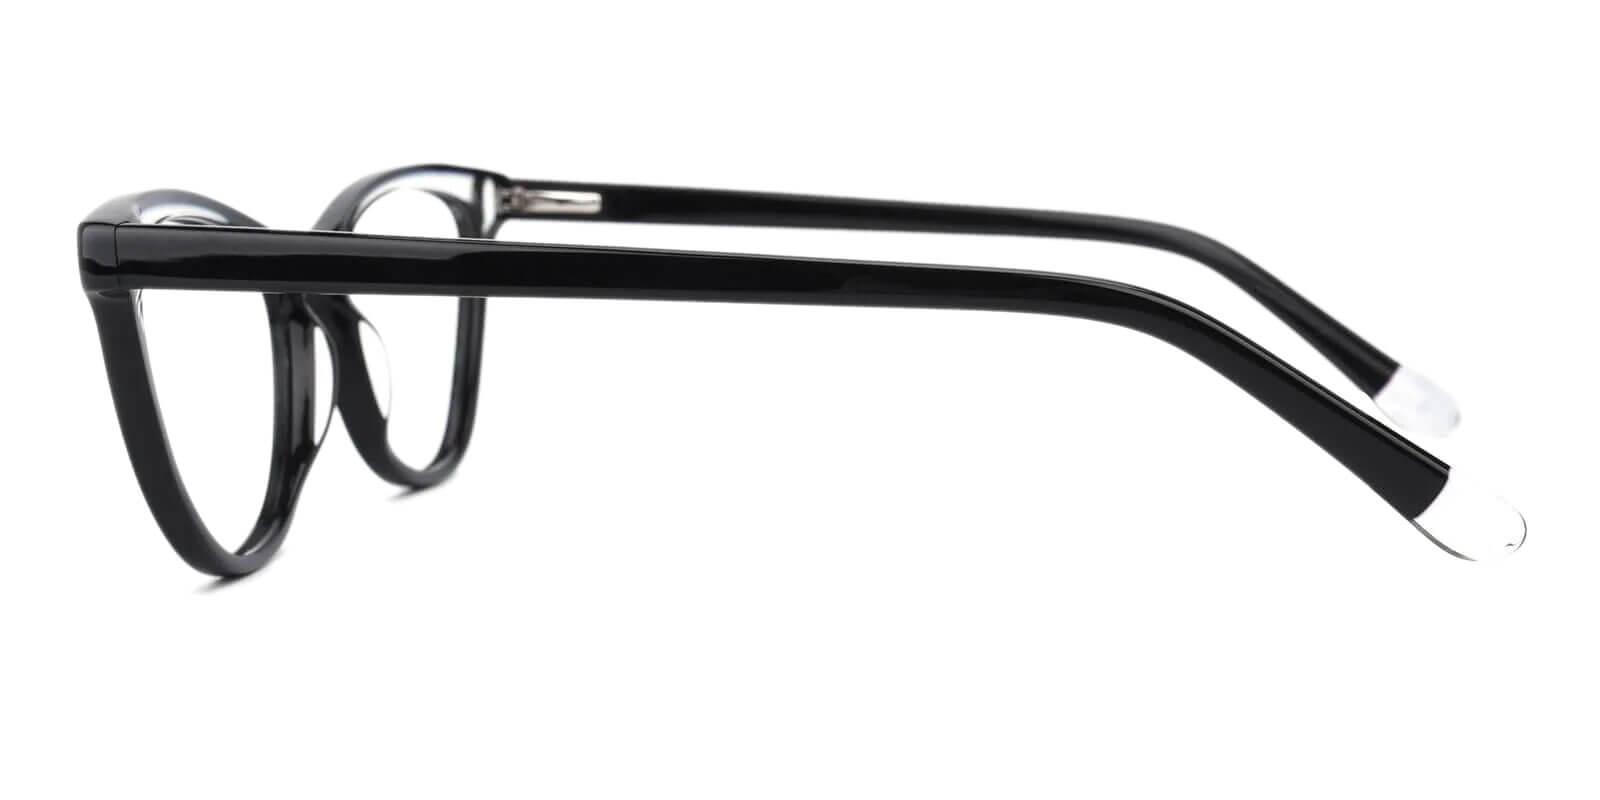 Luznic Black Acetate Eyeglasses , UniversalBridgeFit Frames from ABBE Glasses